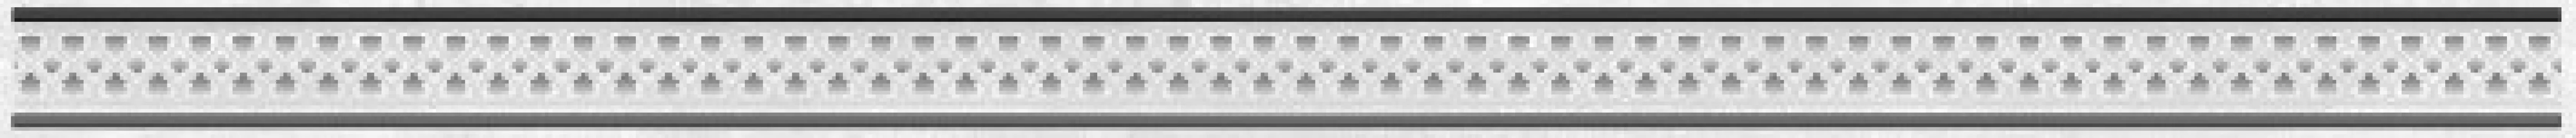 Плитка Laparet 60x4 бордюр Ажур серый 48-03-06-659 Мармара глянцевая глазурованная